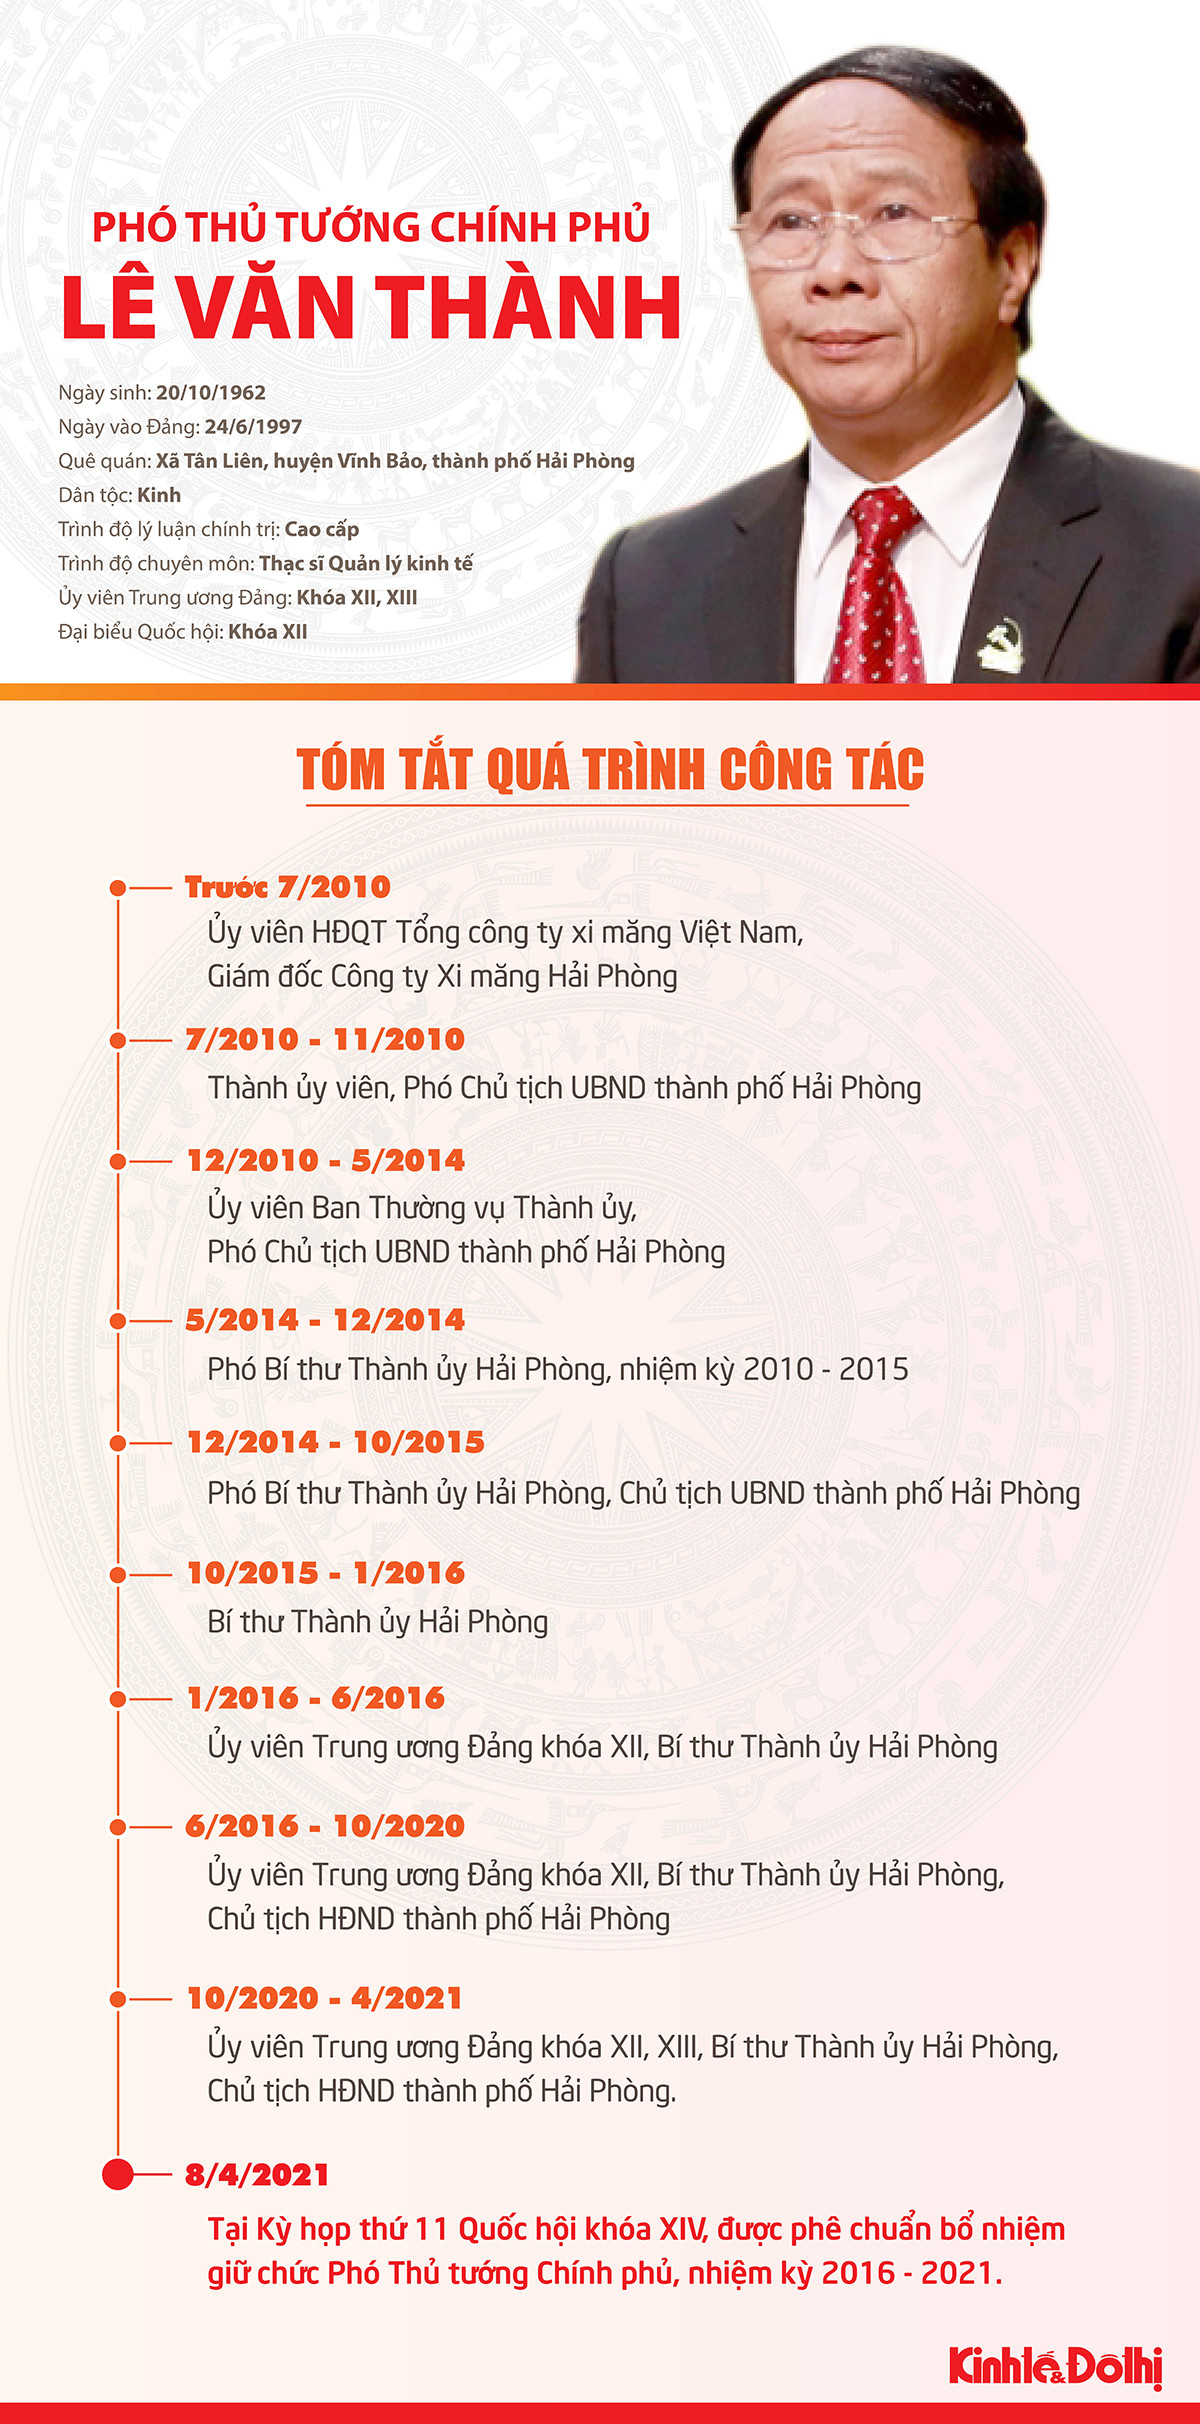 (Infographic) Tóm tắt quá trình công tác của Phó Thủ tướng Lê Văn Thành